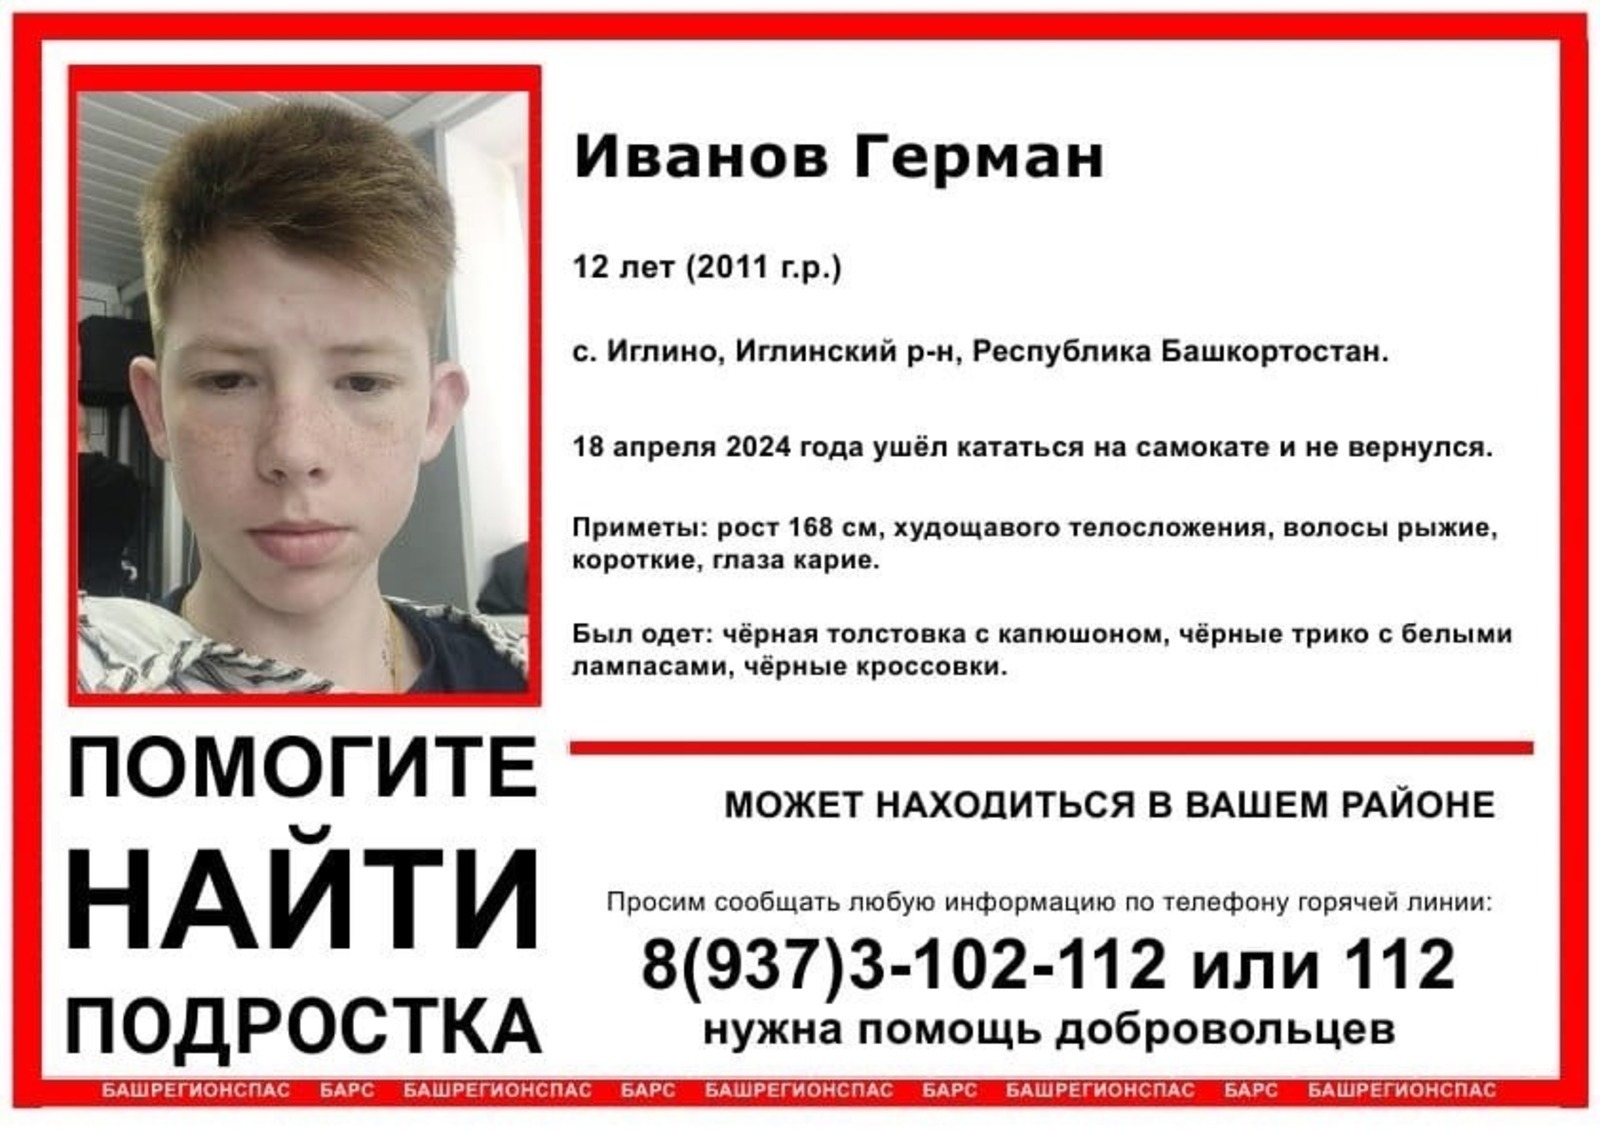 Катался на самокате и пропал: ищут 12-летнего Германа Иванова в Башкирии